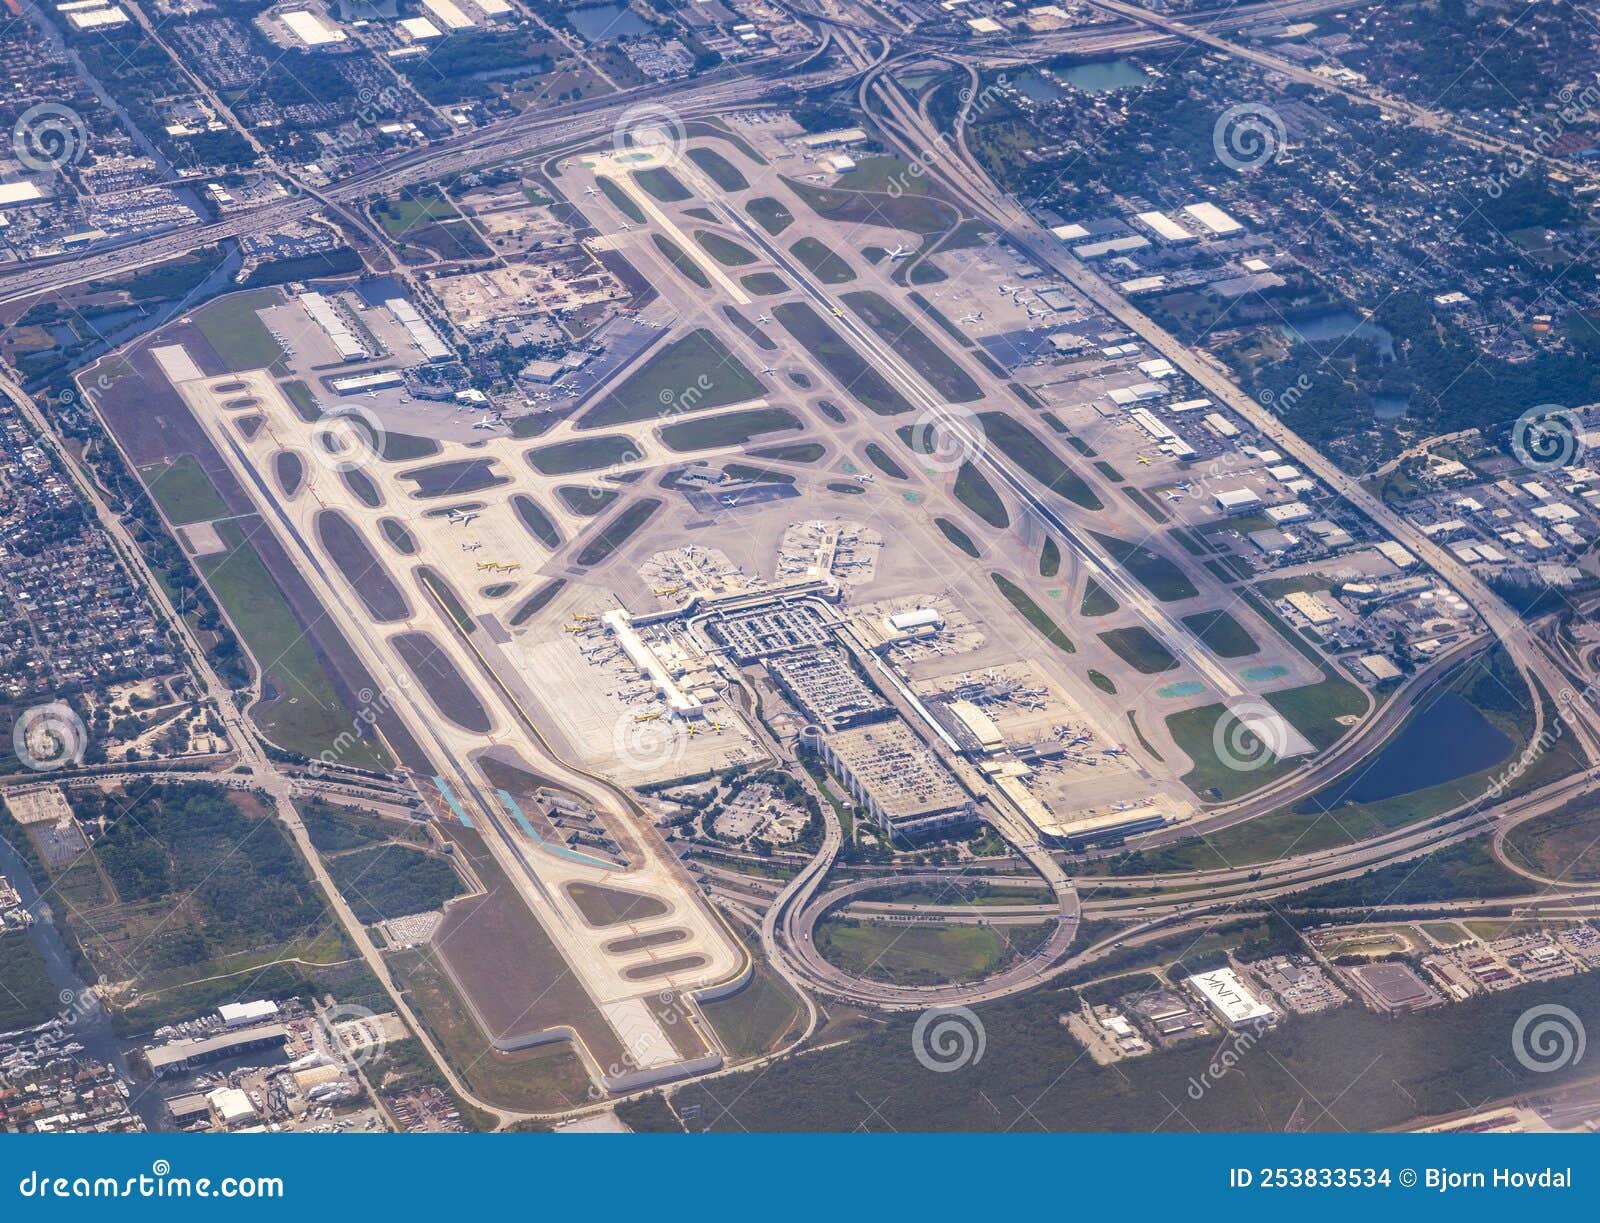 vista aerea del aeropuerto de fort lauderdale 1